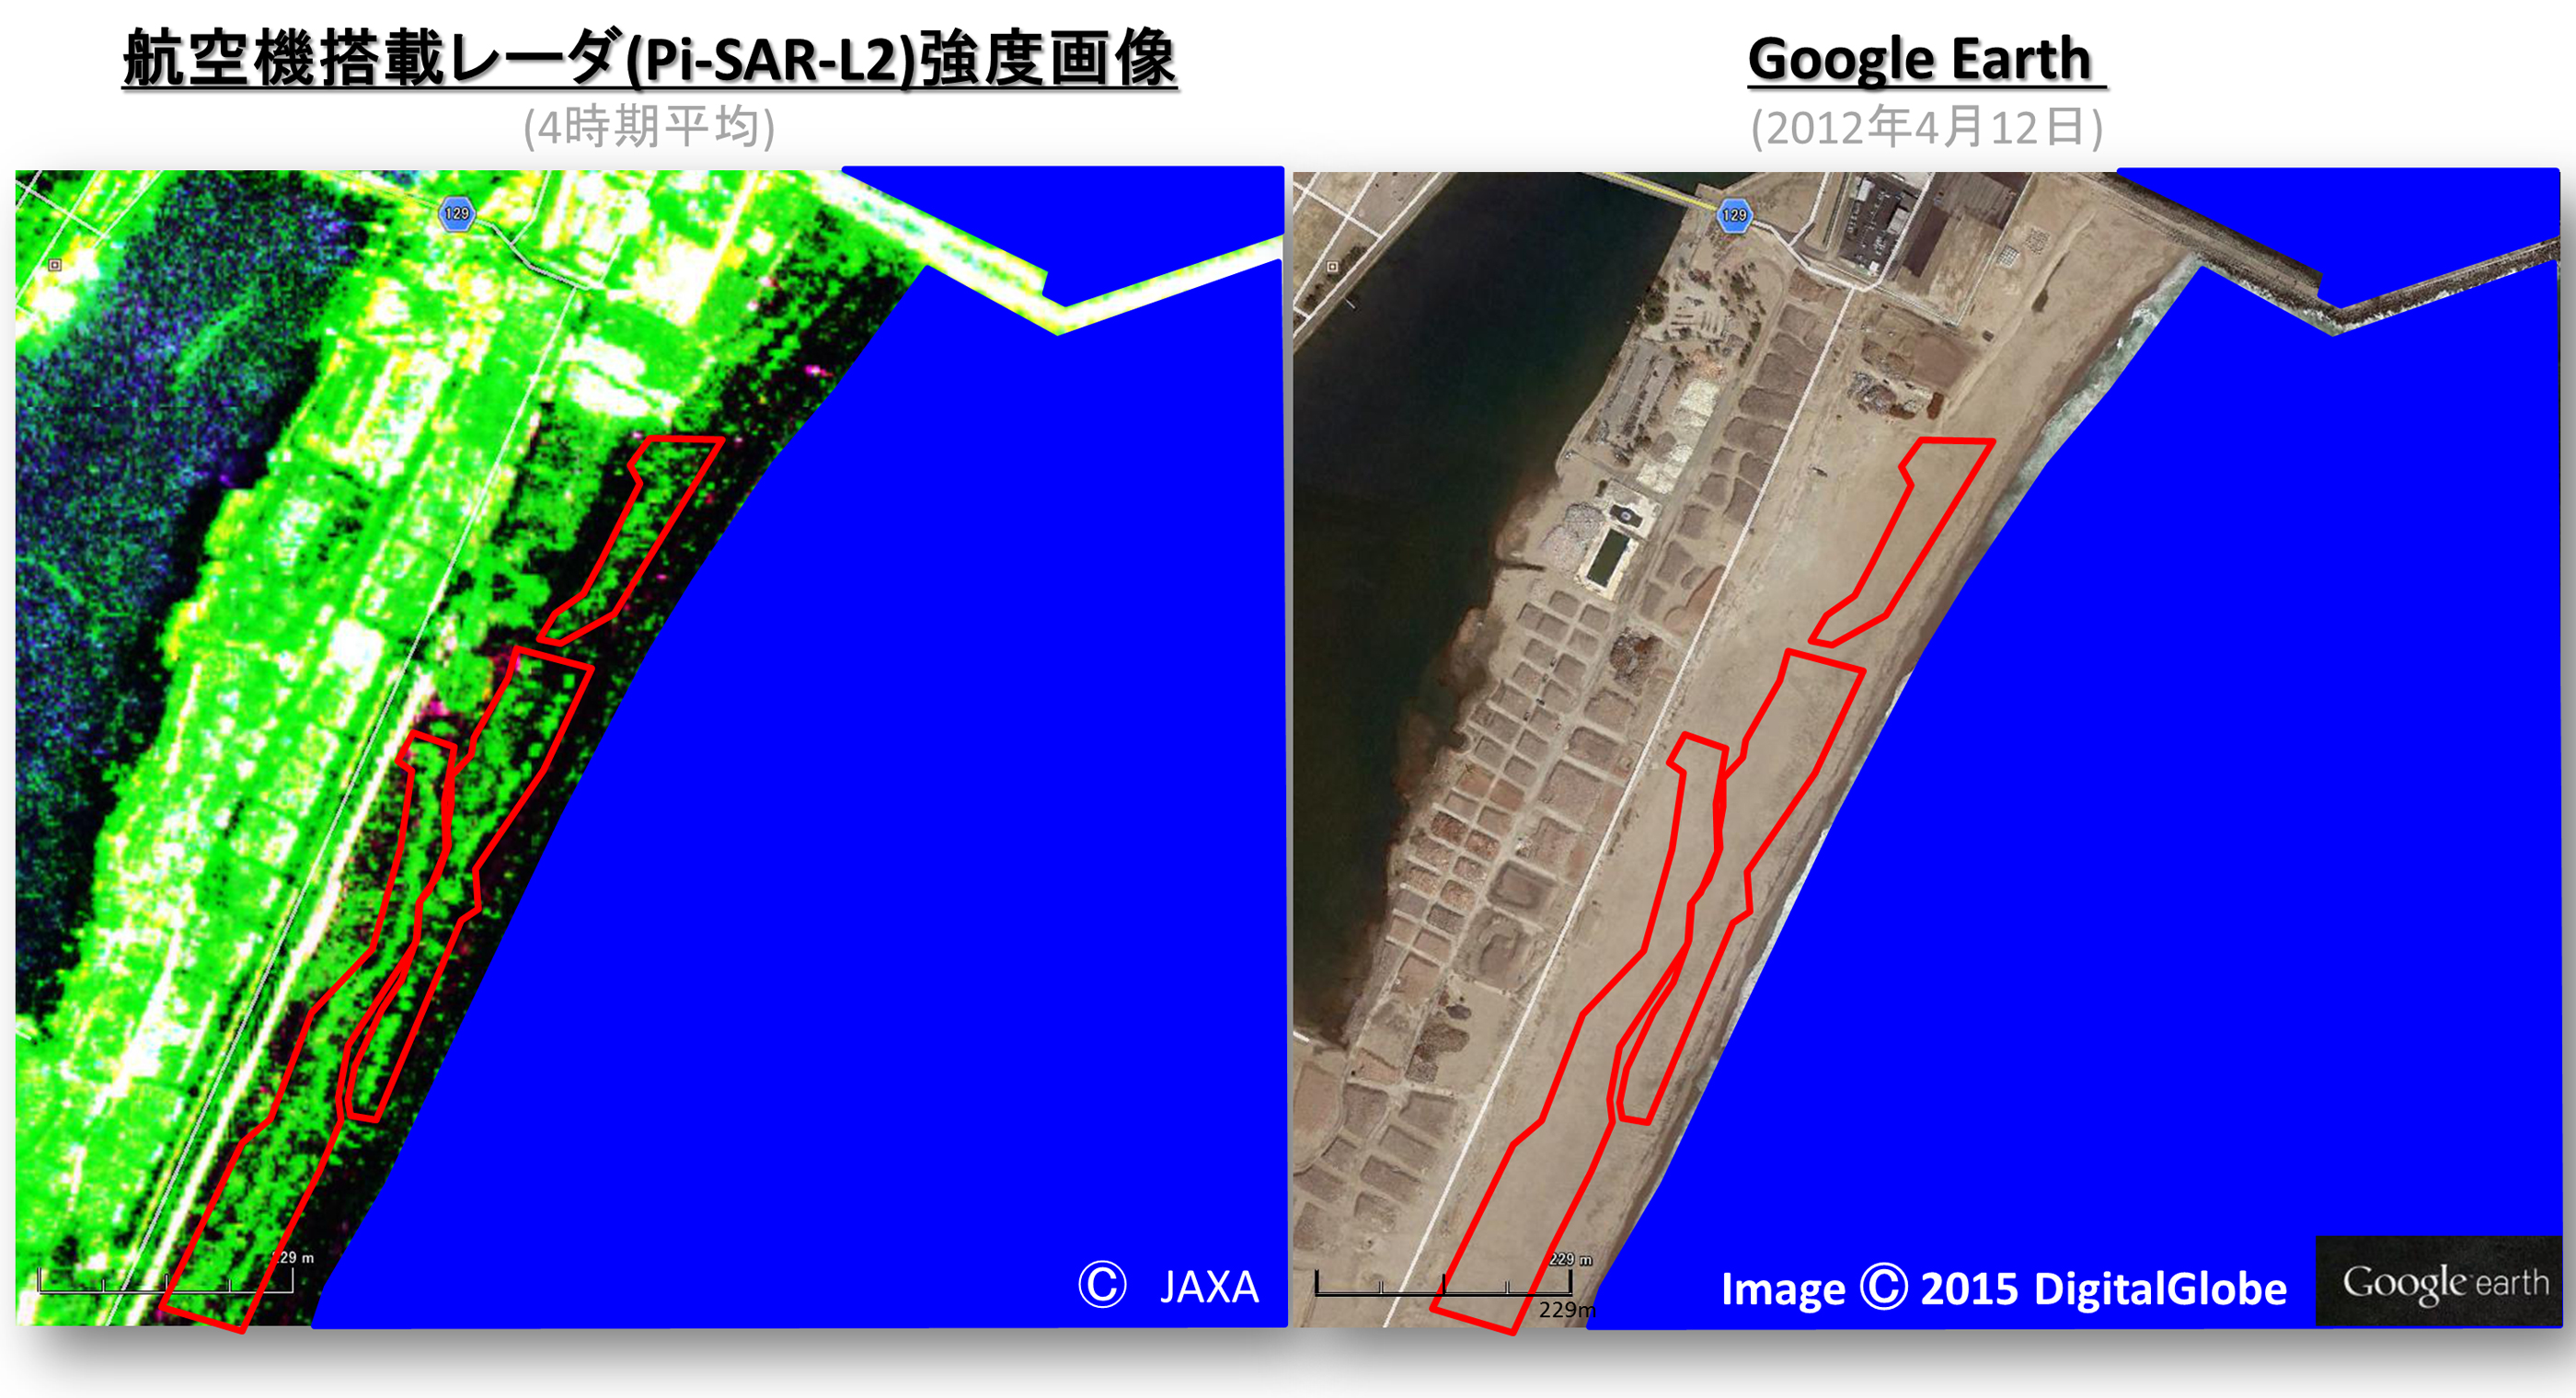 図1：航空機搭載合成開口レーダ (Pi-SAR-L2) 強度画像（左）と光学画像（右）